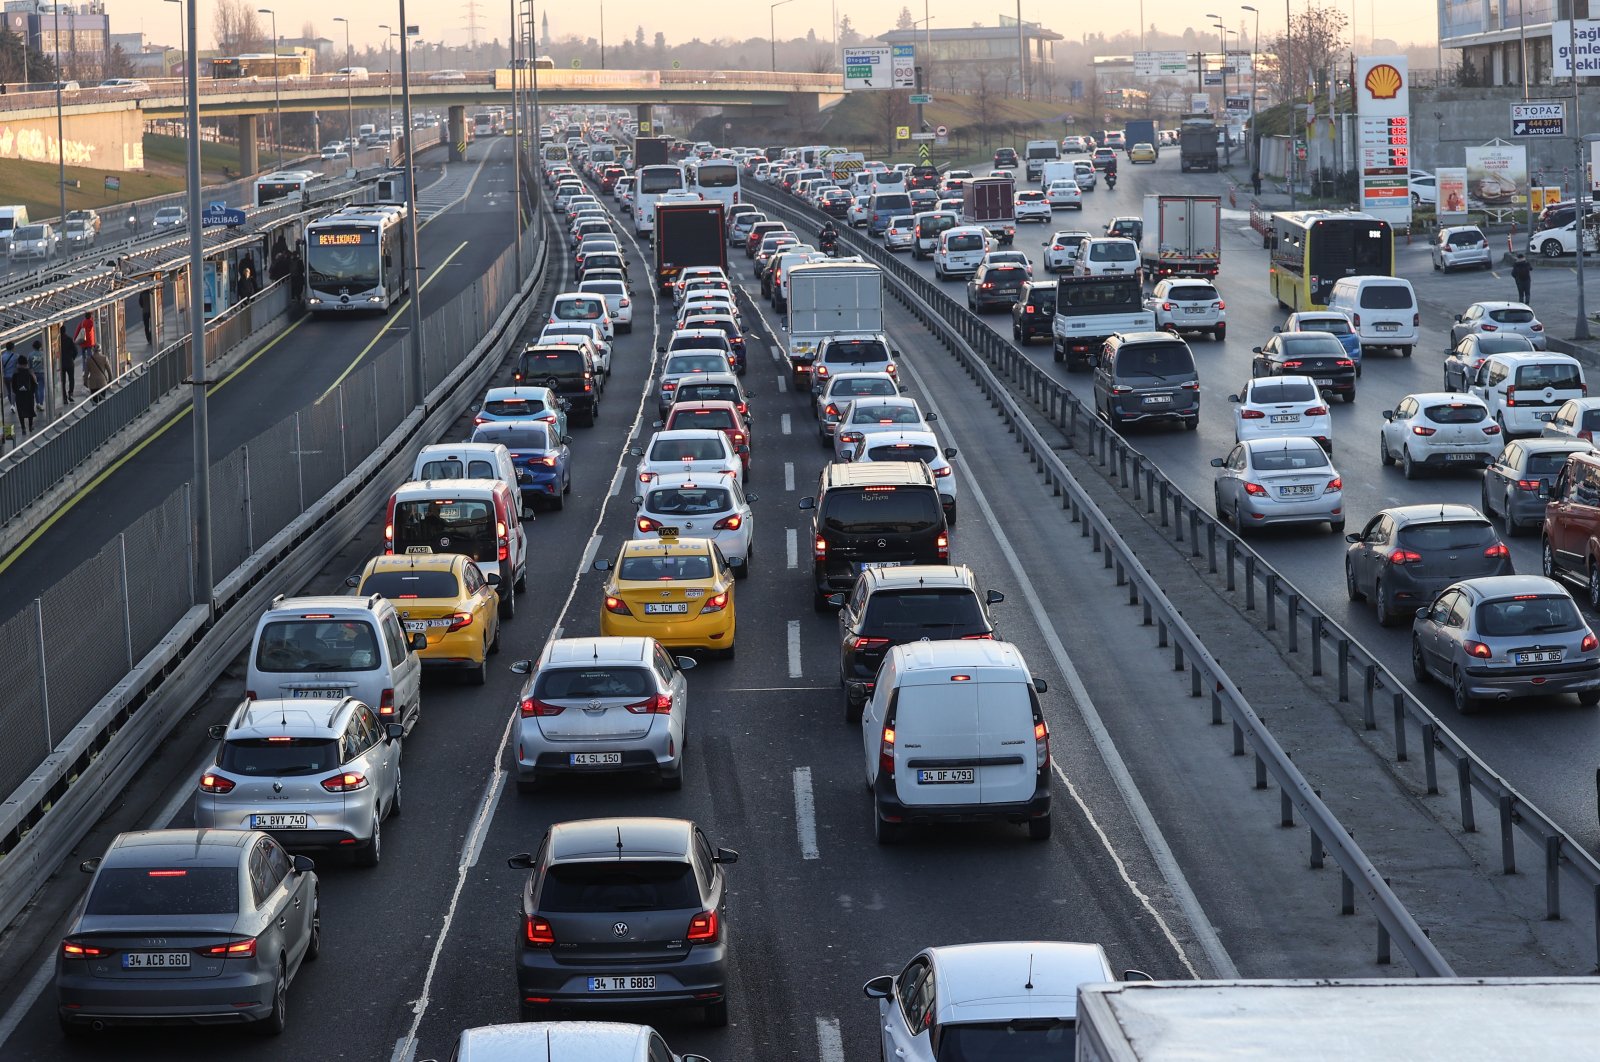 Türkiye merevisi ambang batas pajak untuk membantu memangkas harga mobil, mendorong penjualan